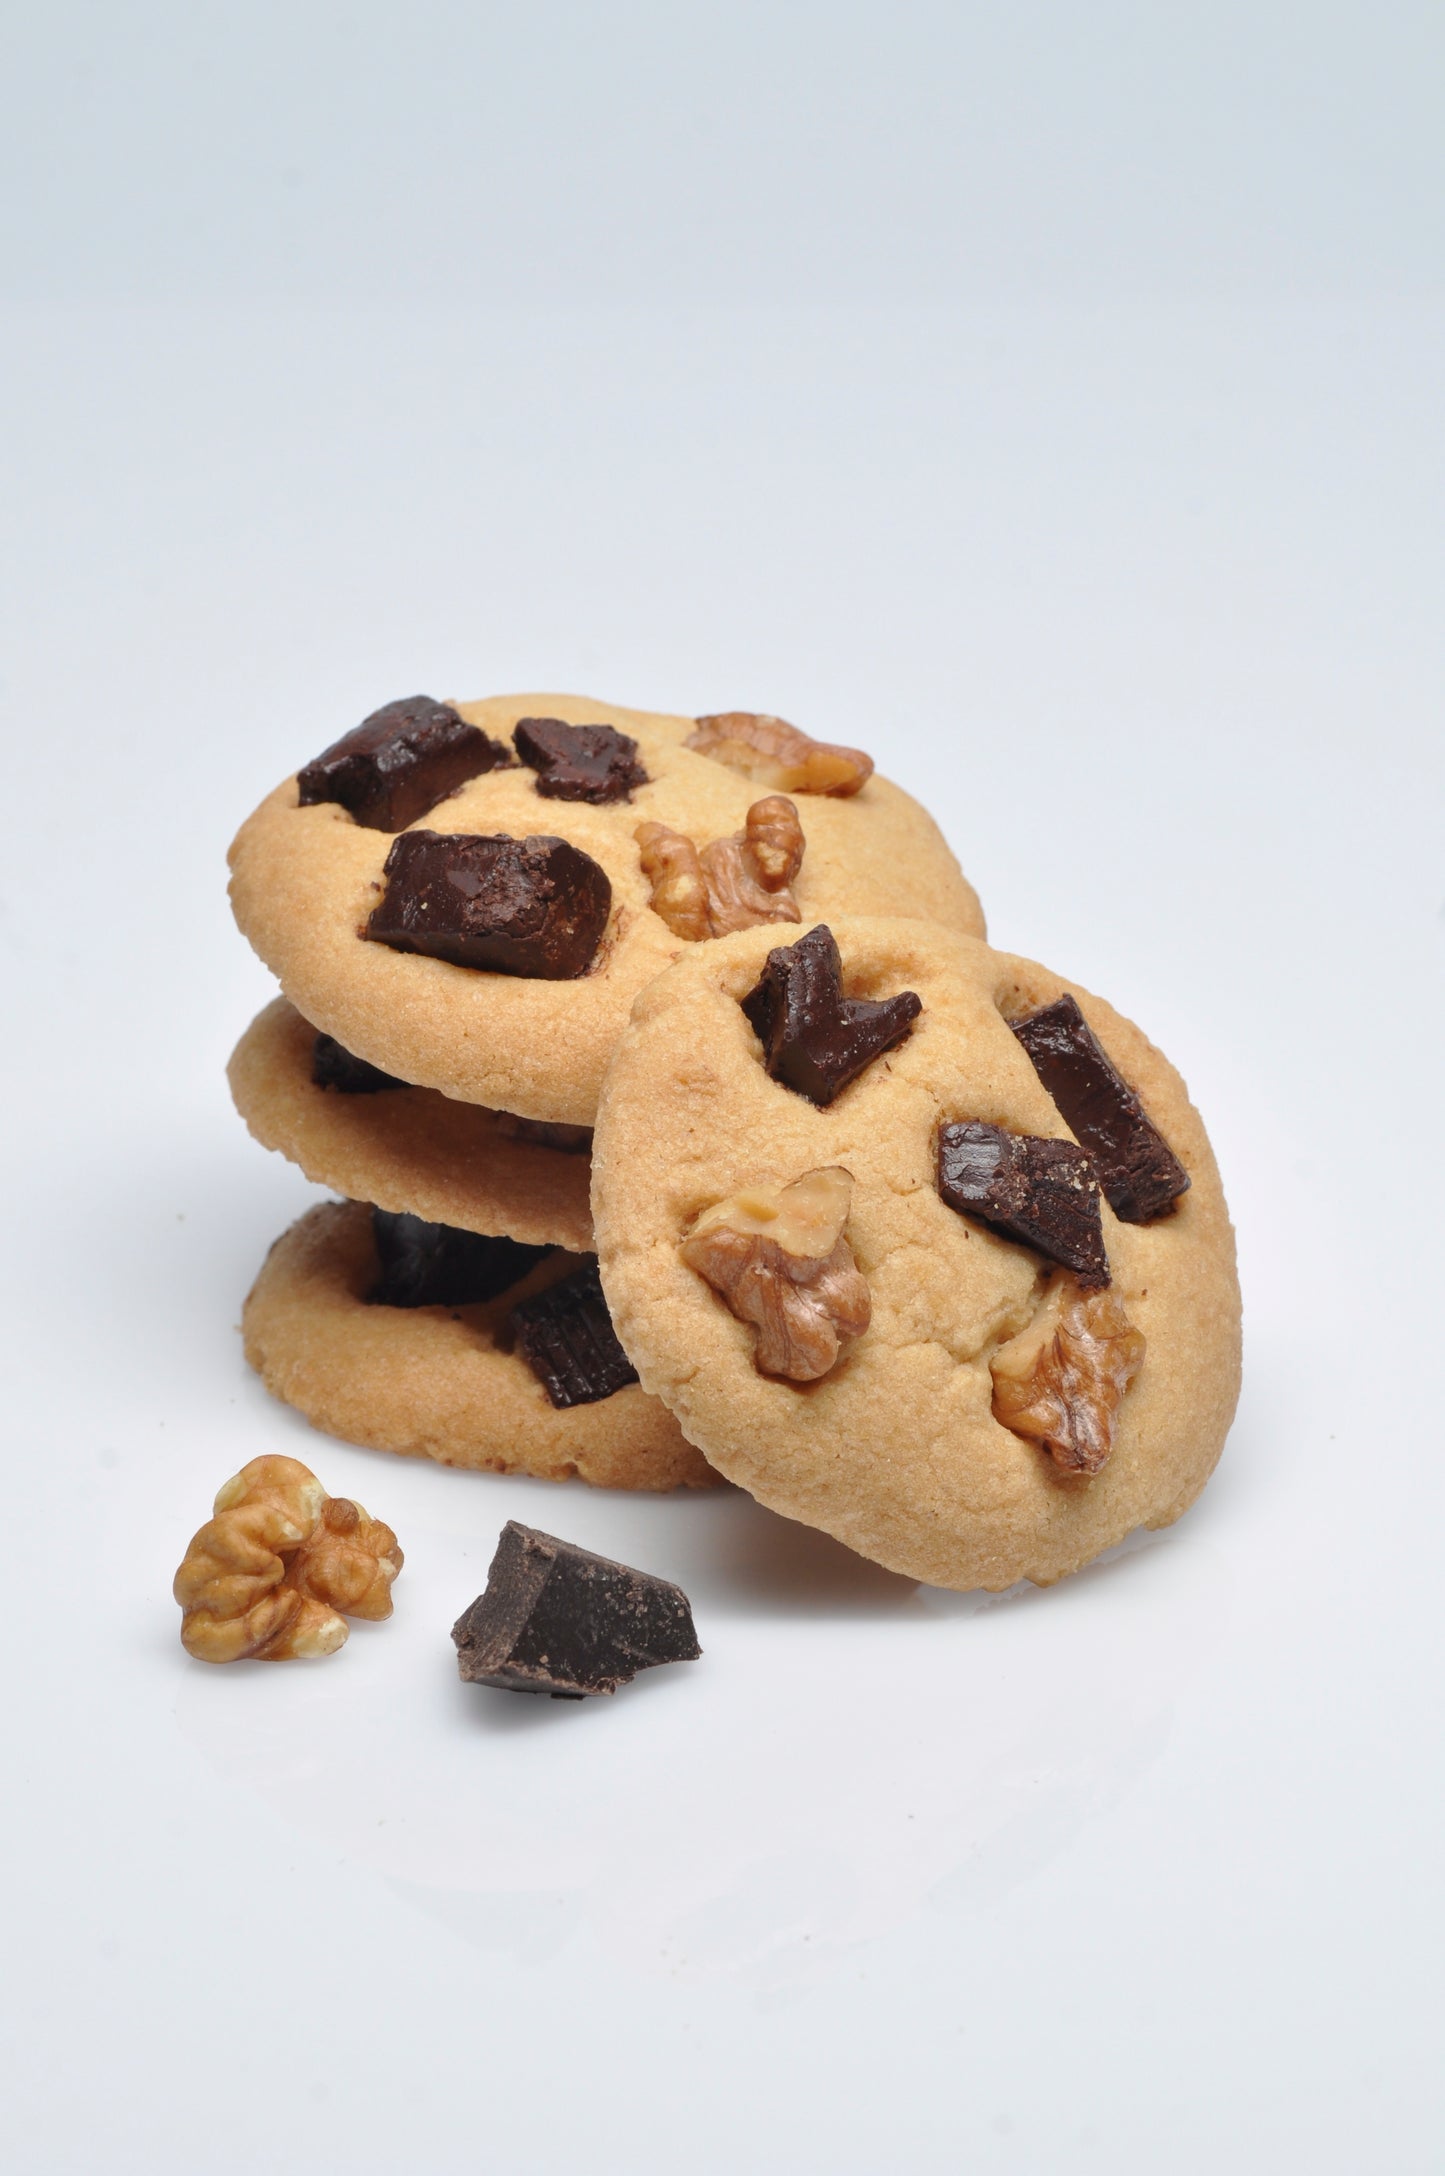 Domino's Walnut Chocolate Chip Cookies